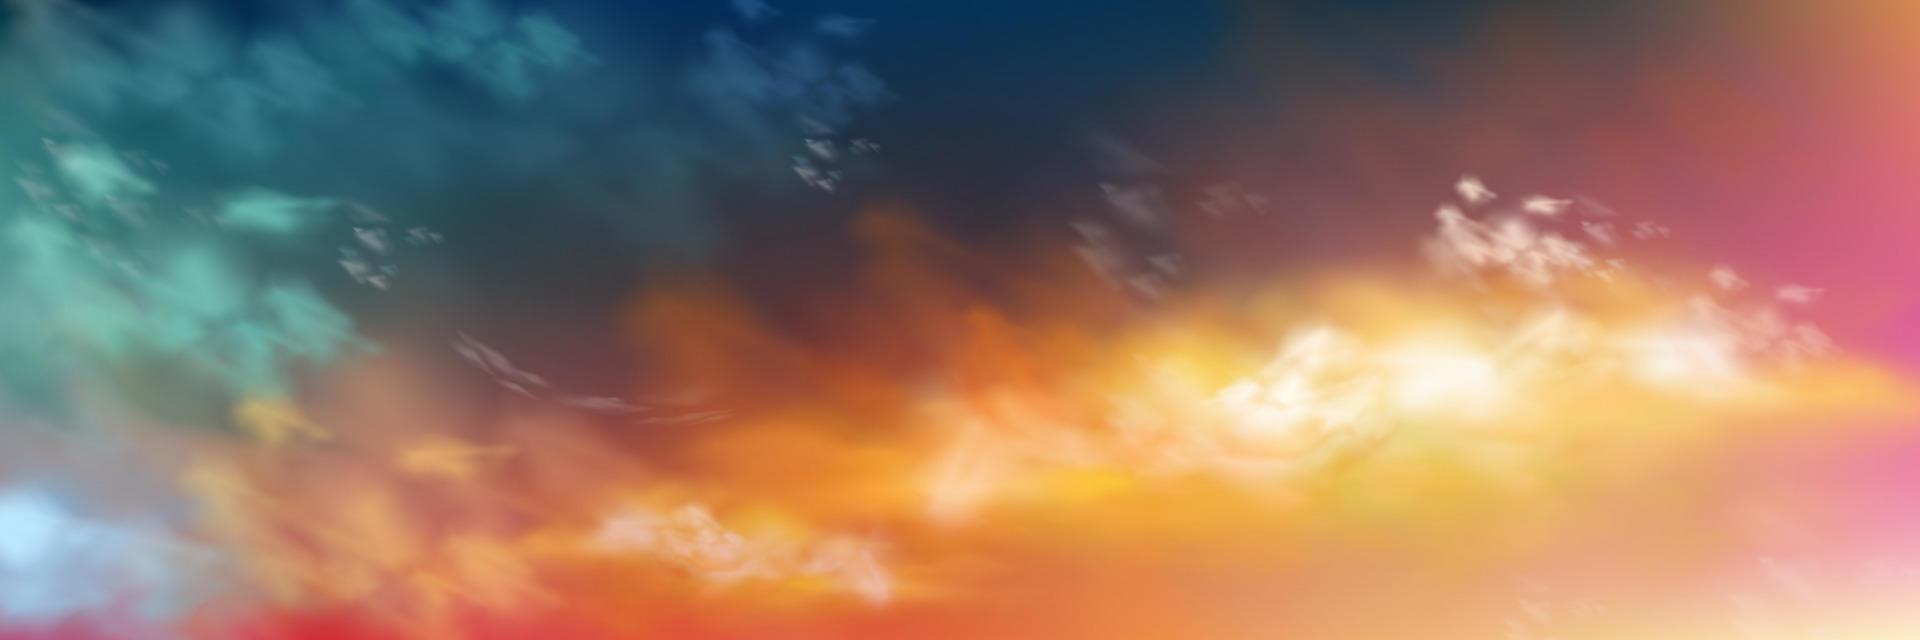 solnedgång himmel med realistisk moln textur vektor